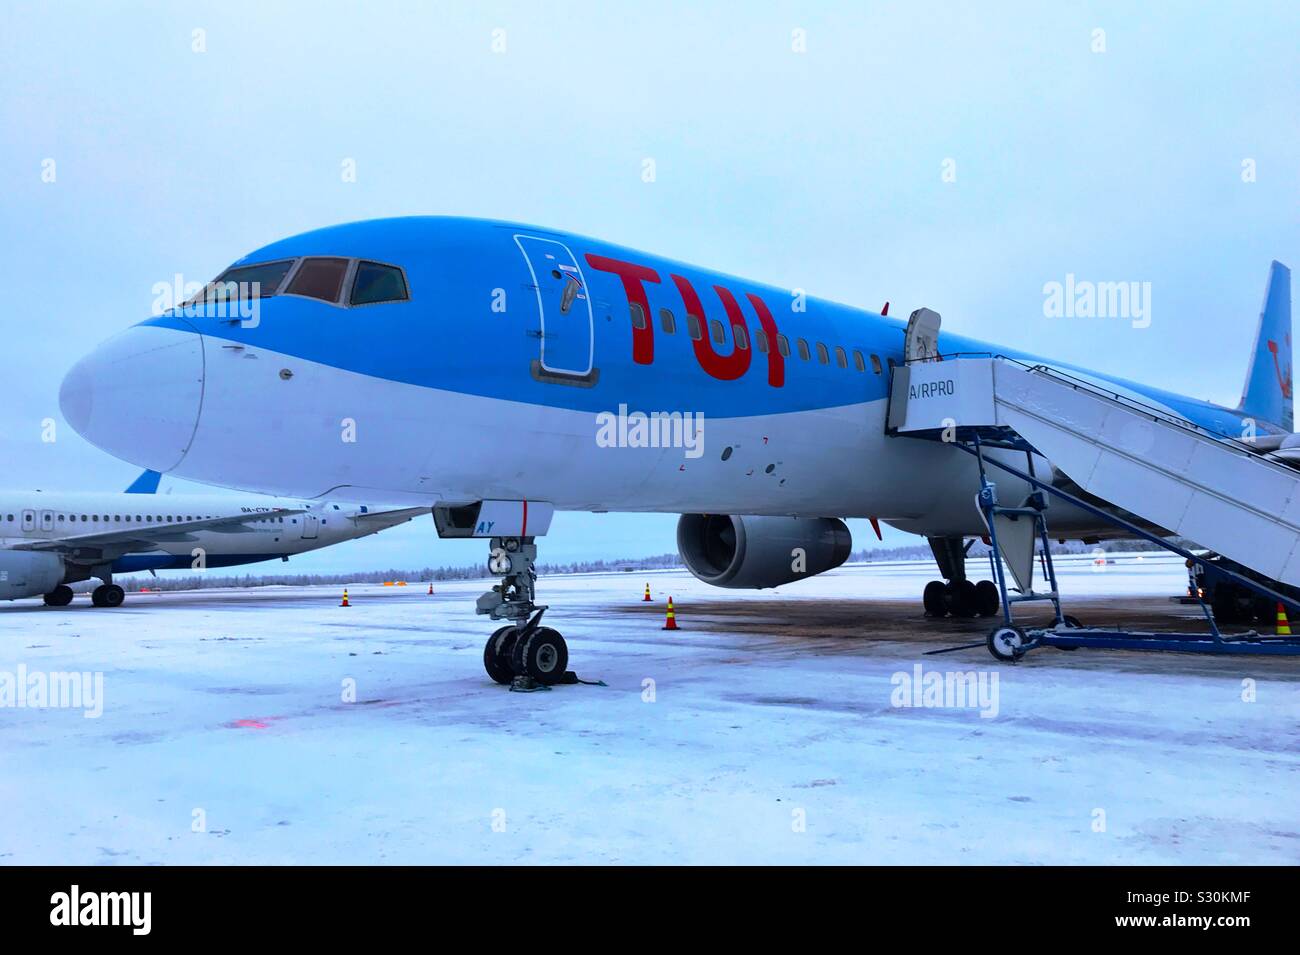 Tui Flugzeug Ankunft auf einem schneebedeckten Landebahn am Flughafen Rovaniemi in Lappland. Stockfoto